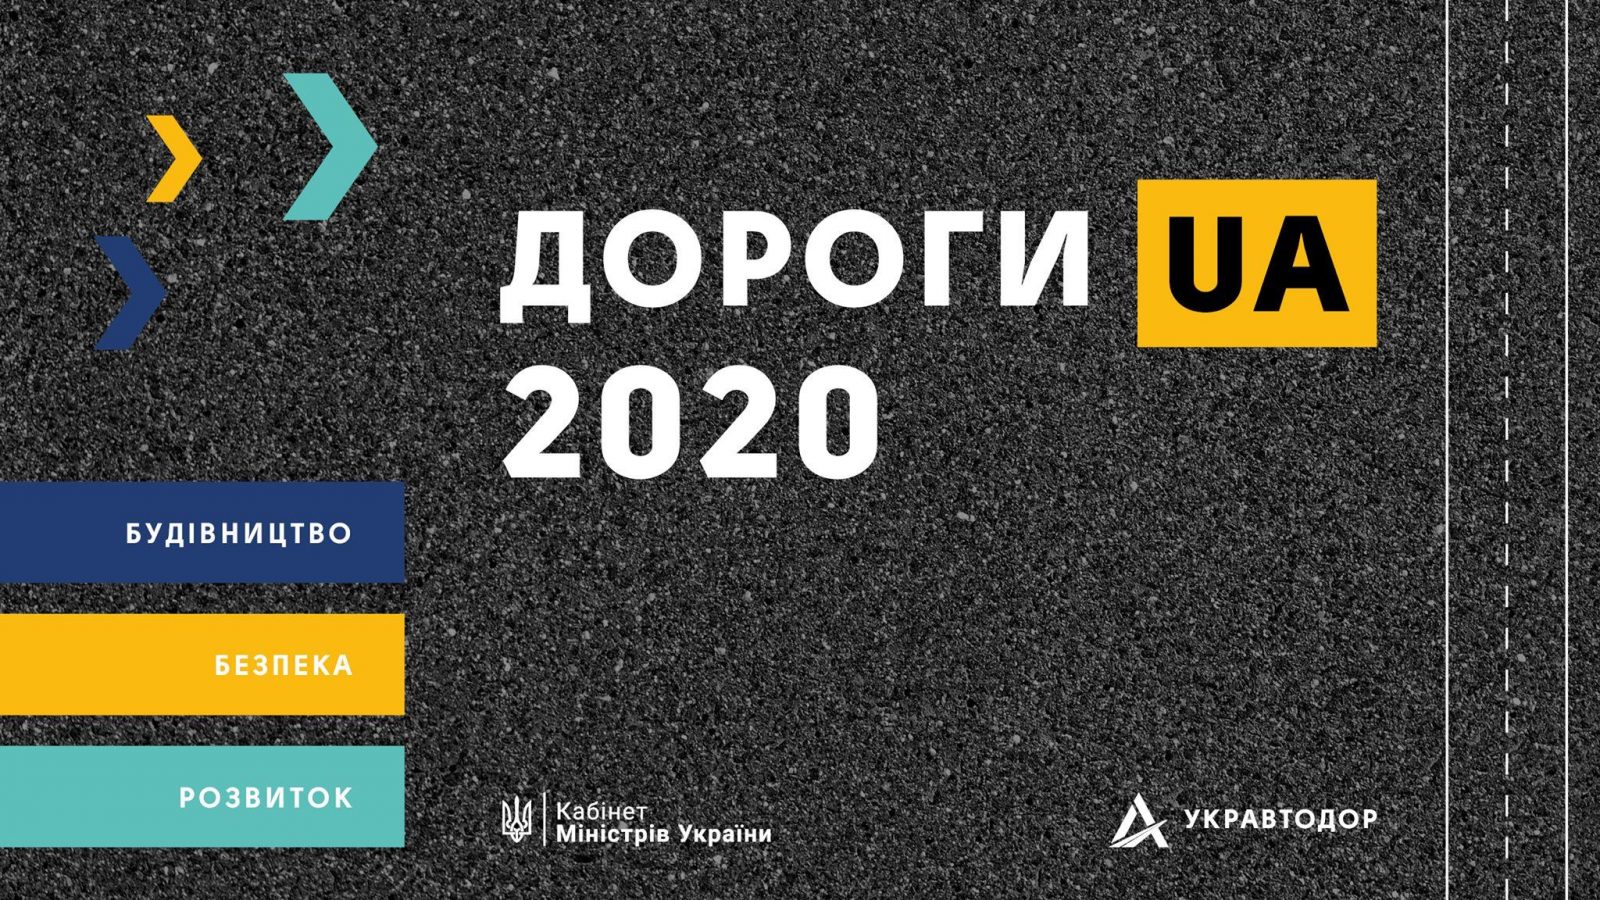 «Дороги UA 2020»: какие планы у Укравтодора на год?